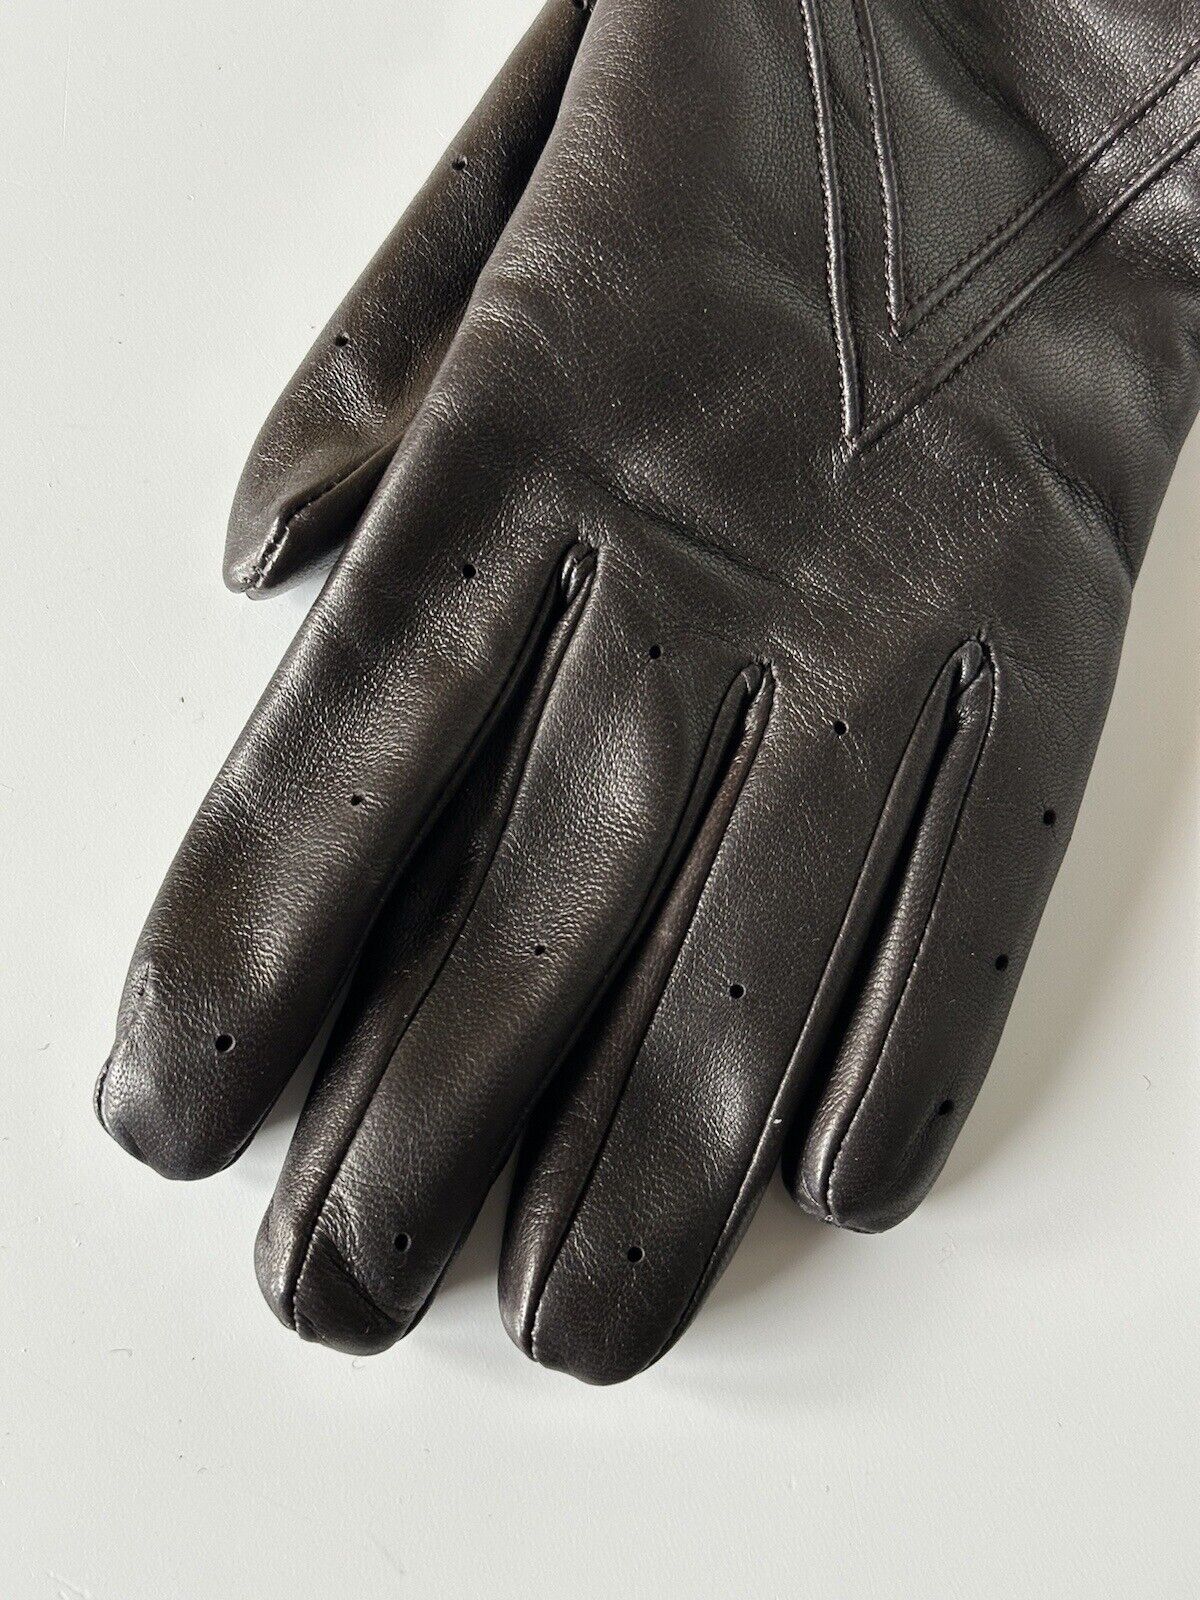 NWT $650 Bottega Veneta Women's Leather Gloves Brown Size 7.5 (M) Italy 690300